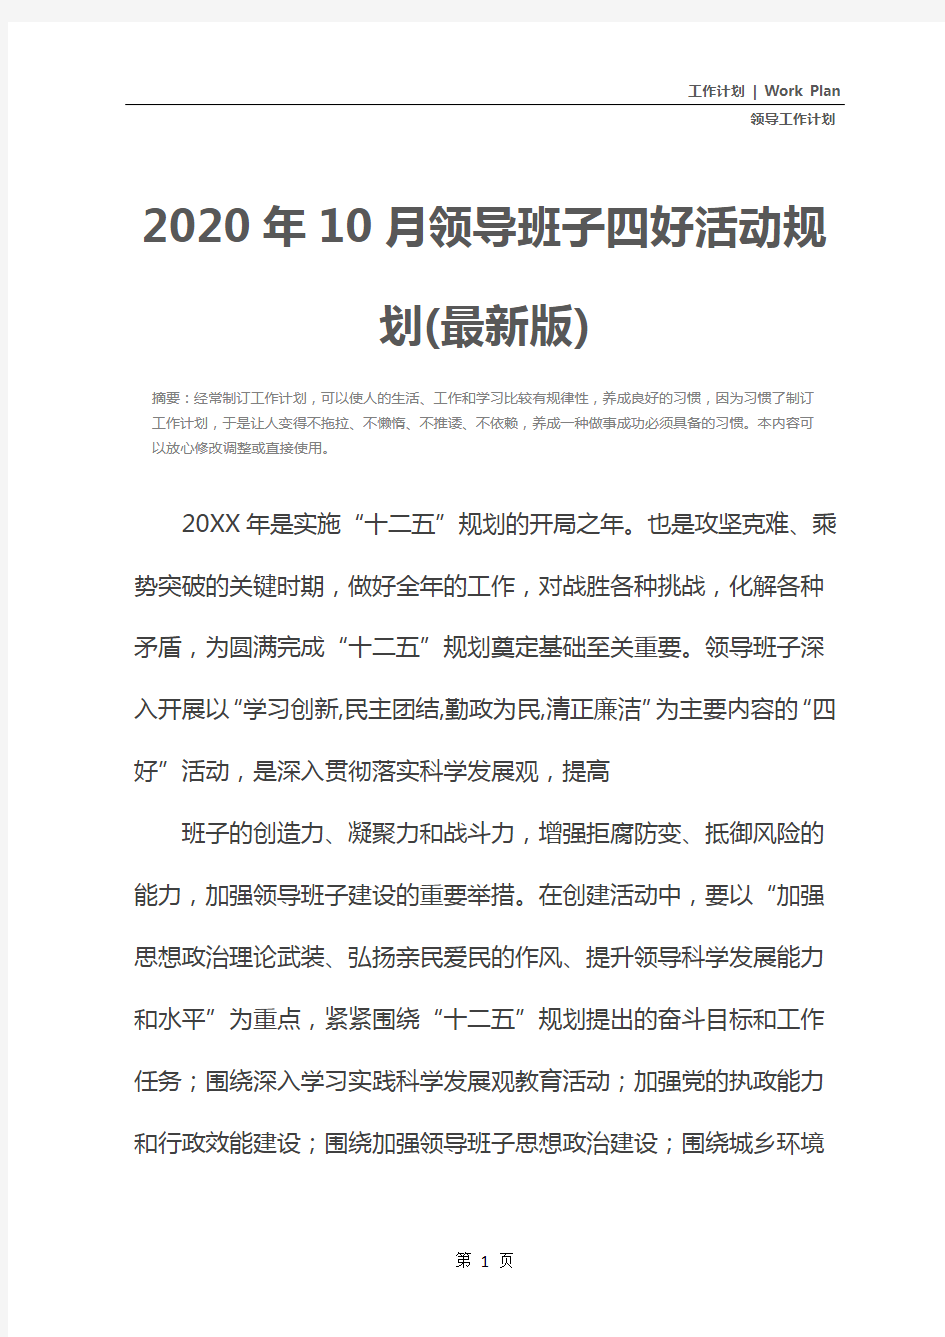 2020年10月领导班子四好活动规划(最新版)